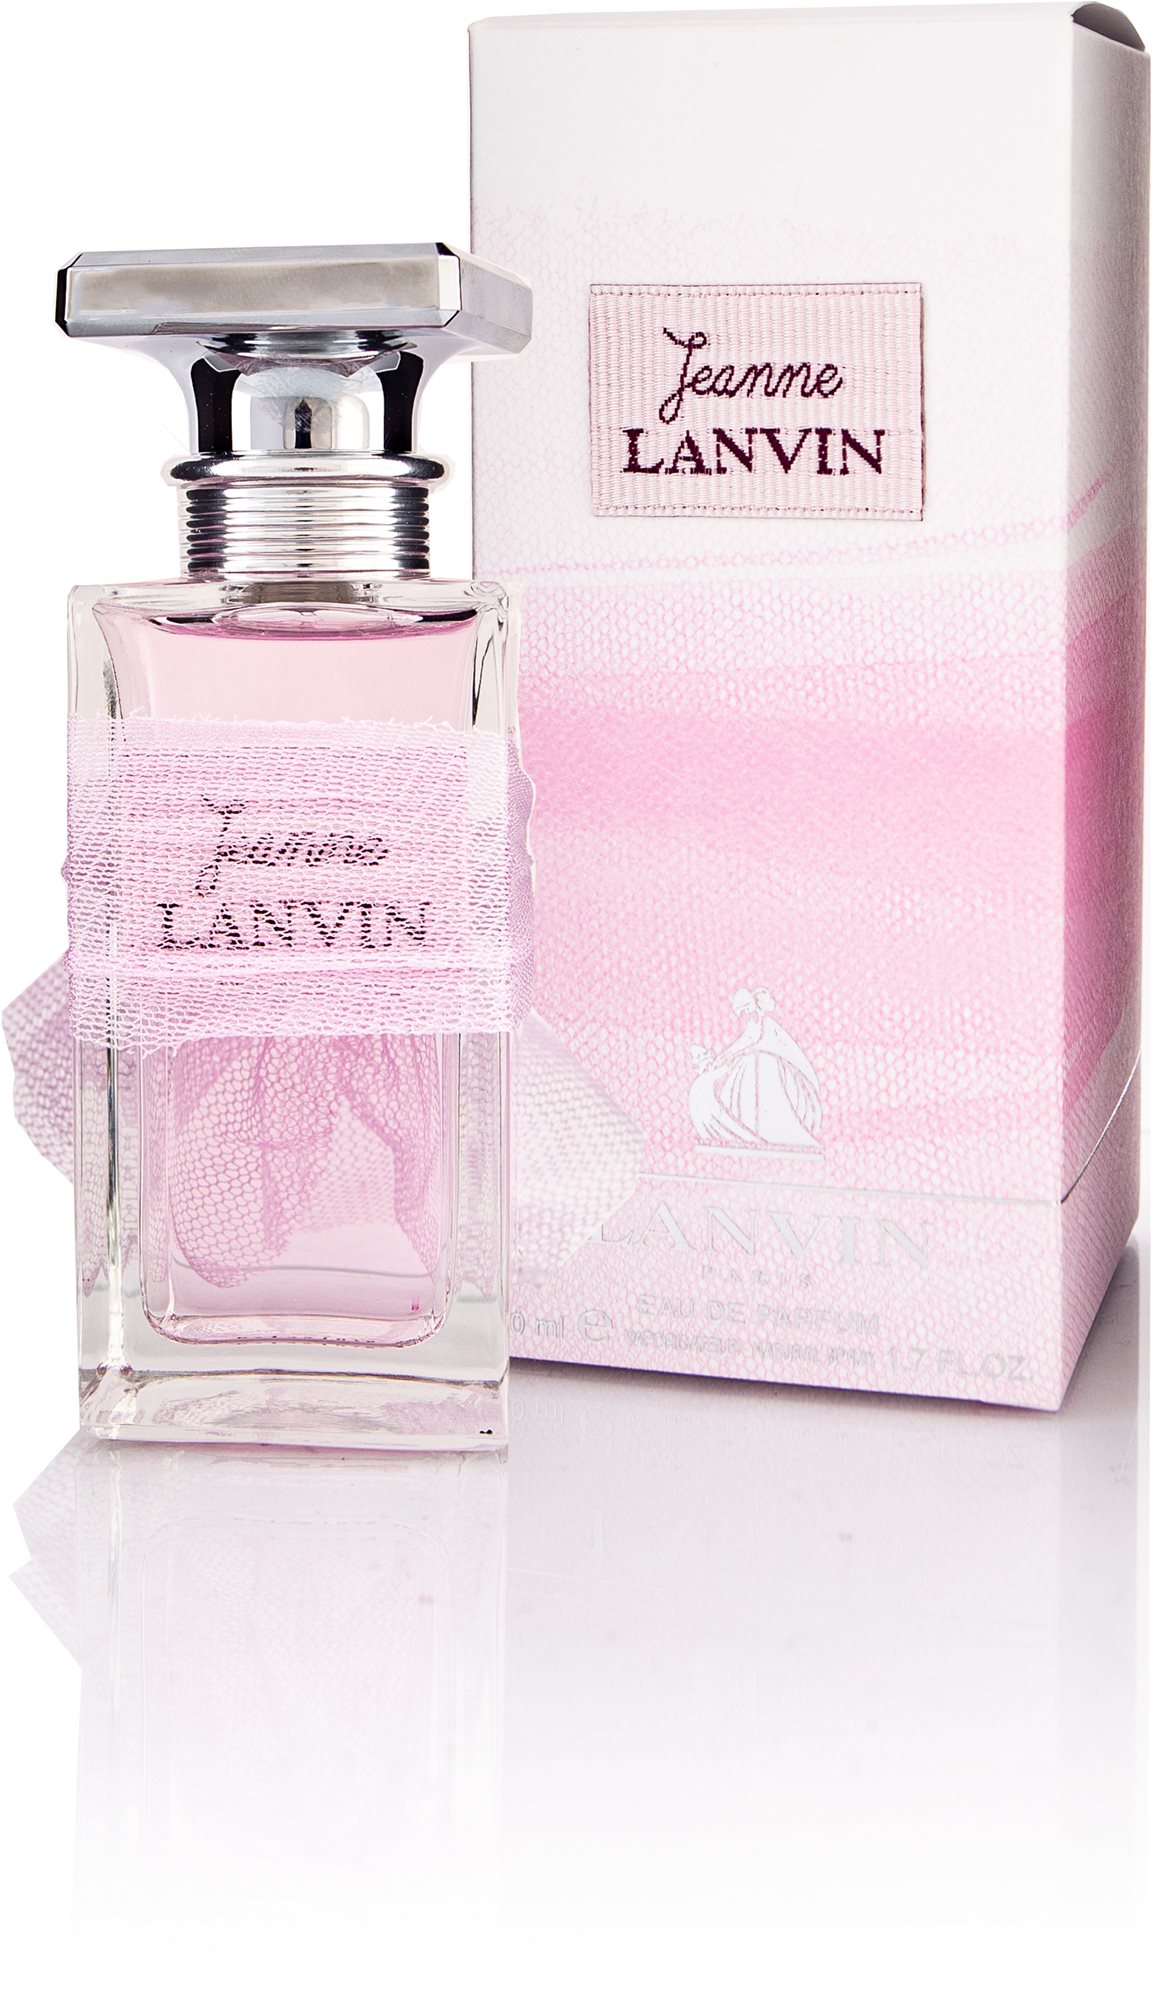 Parfüm LANVIN Jeanne Lanvin EdP 50 ml